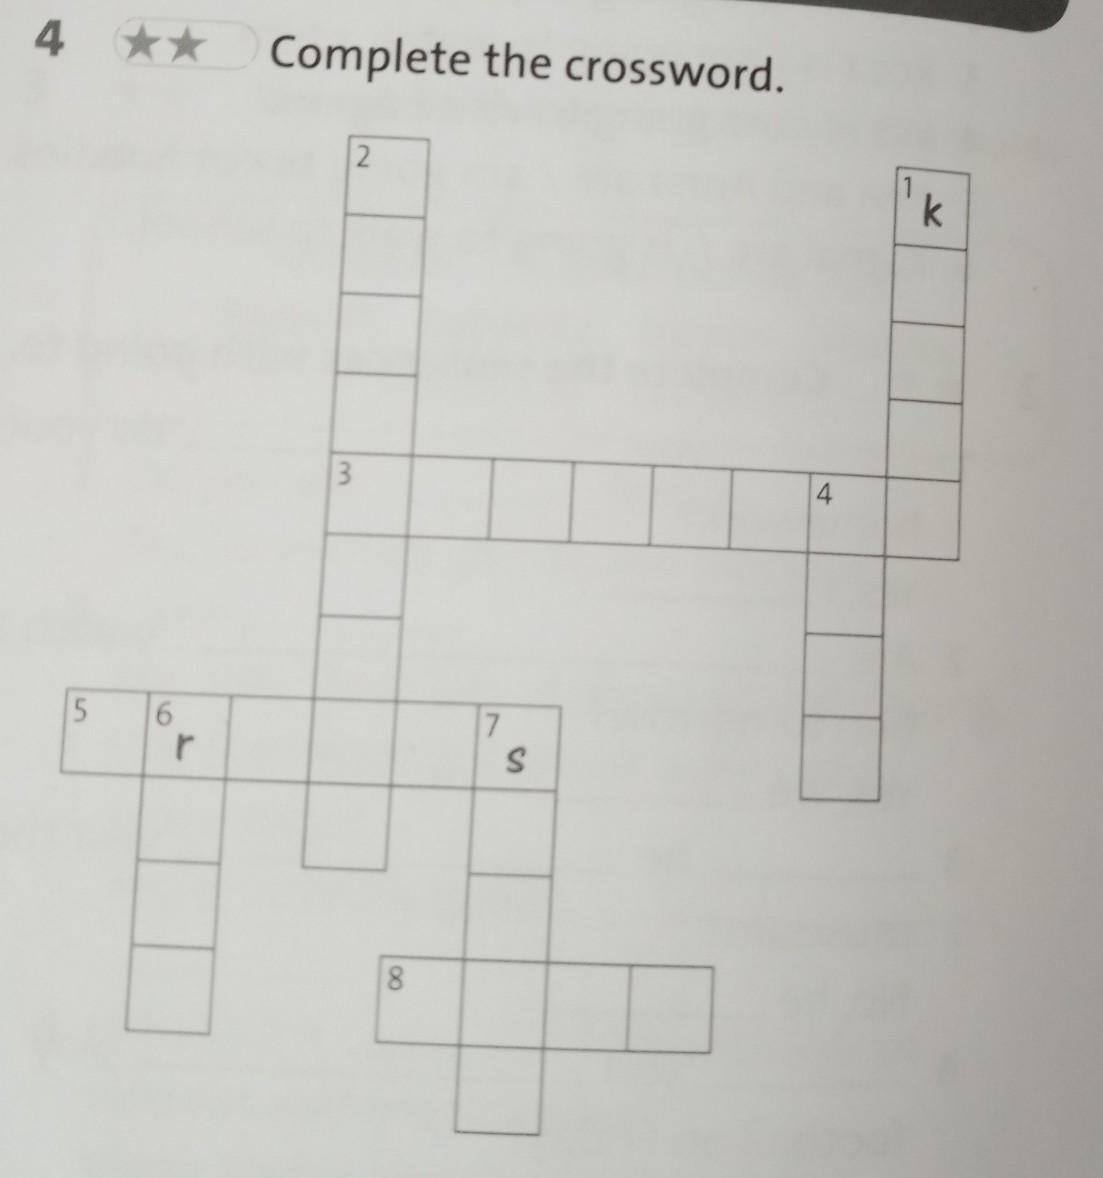 1 Complete the crossword. Complete the crossword. Down across. Complete the crossword 5 класс down. Complete the crossword one. Complete the crossword down